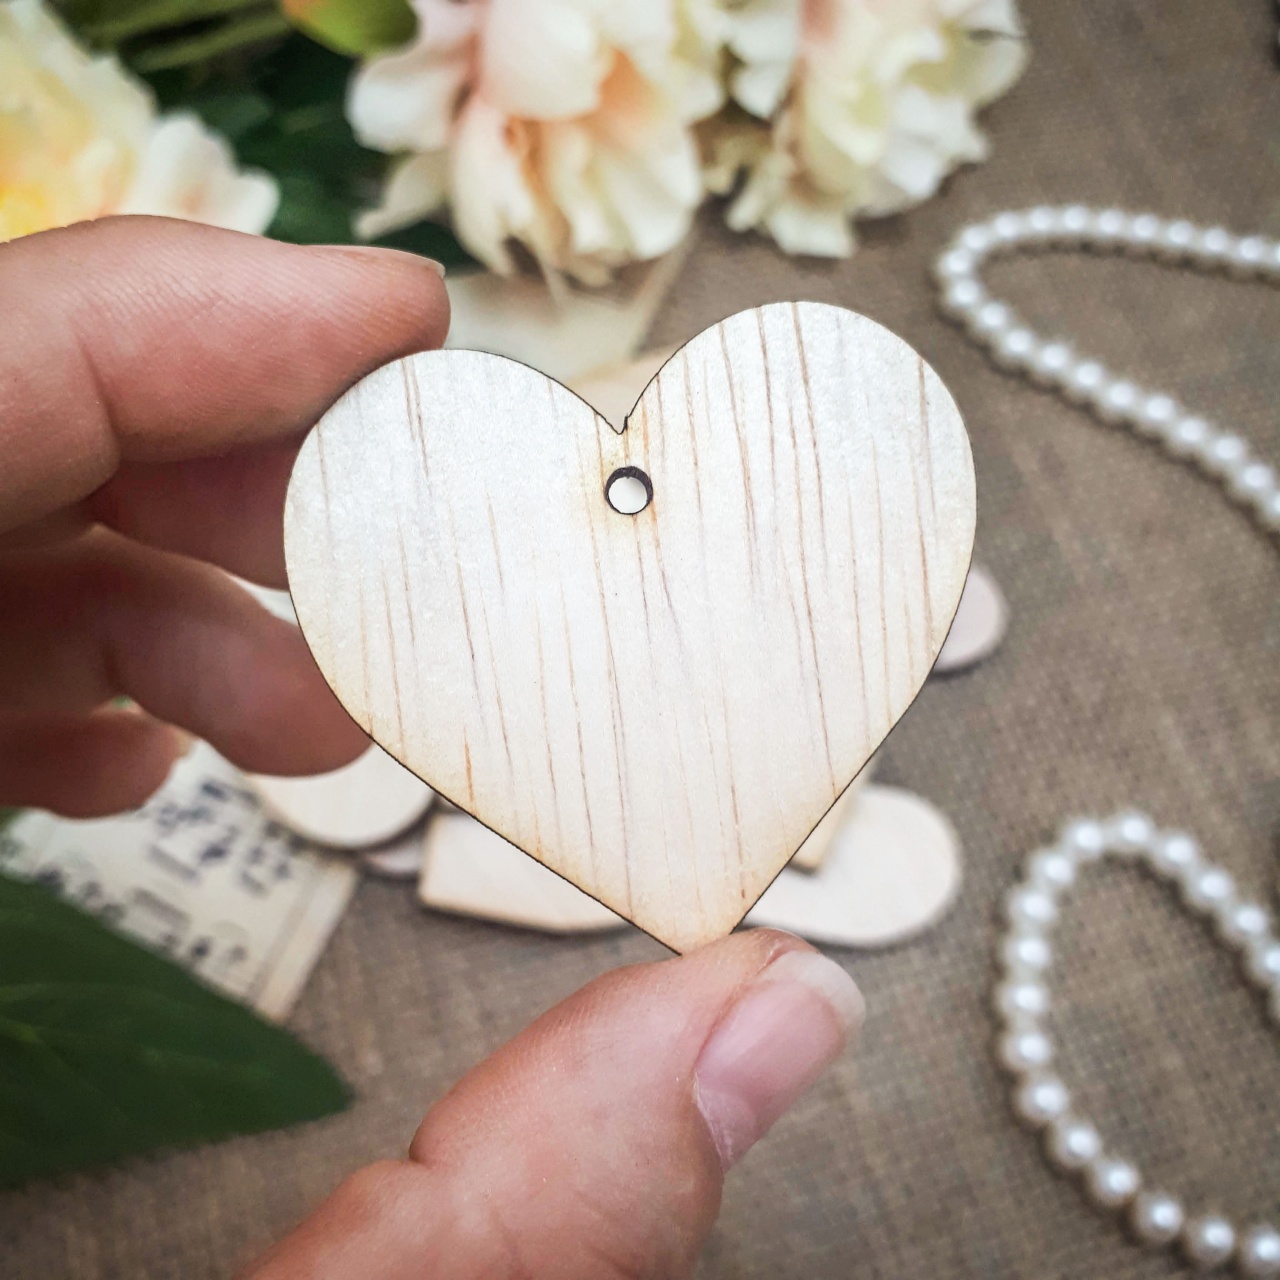 Inimă, 5,5×5 cm, placaj lemn natur